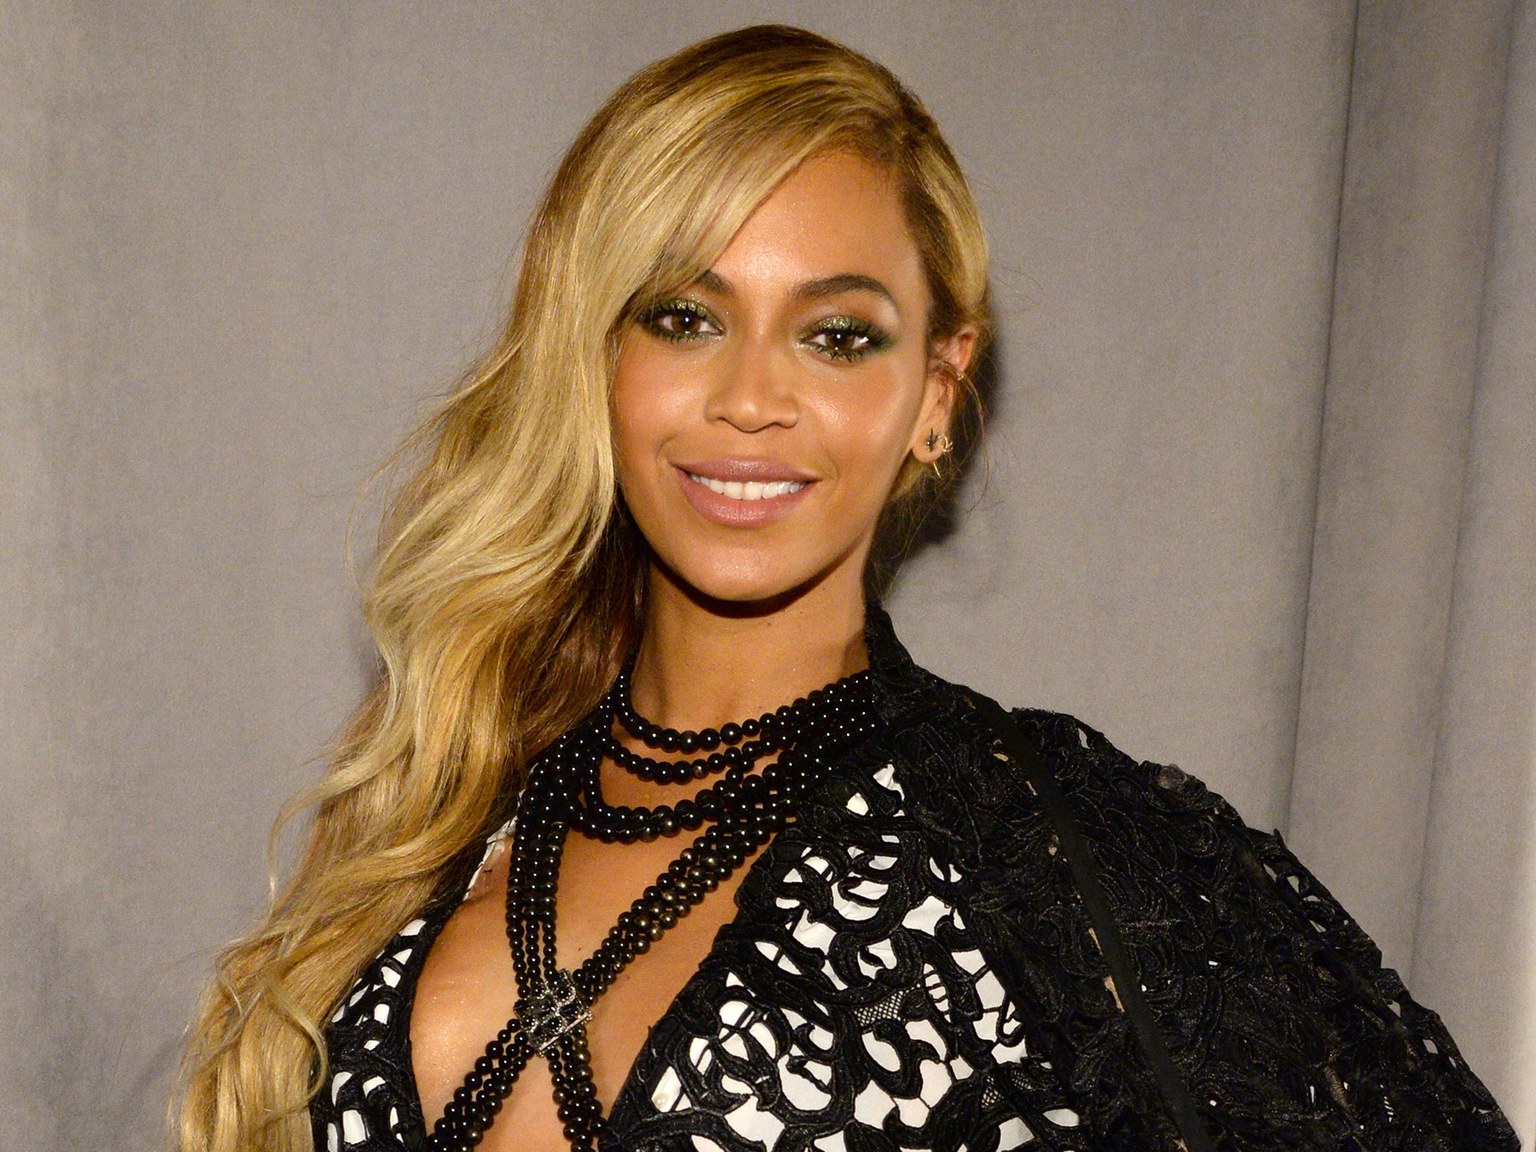 Beyonce împlinește astăzi 37 de ani. Iată 12 lucruri pe care probabil nu le știai despre ea!